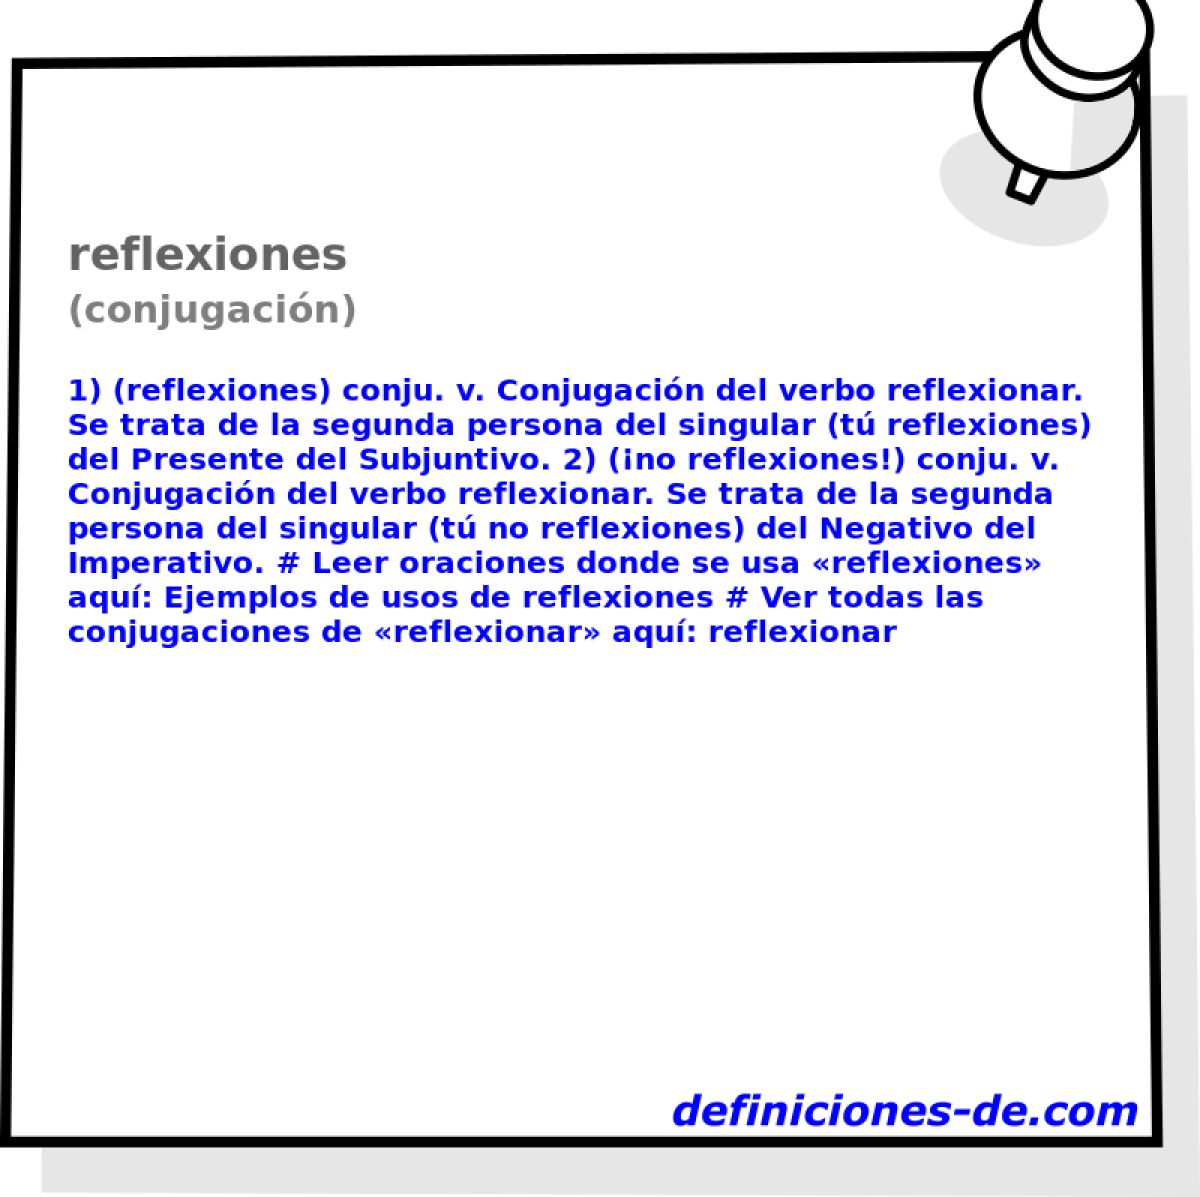 reflexiones (conjugacin)